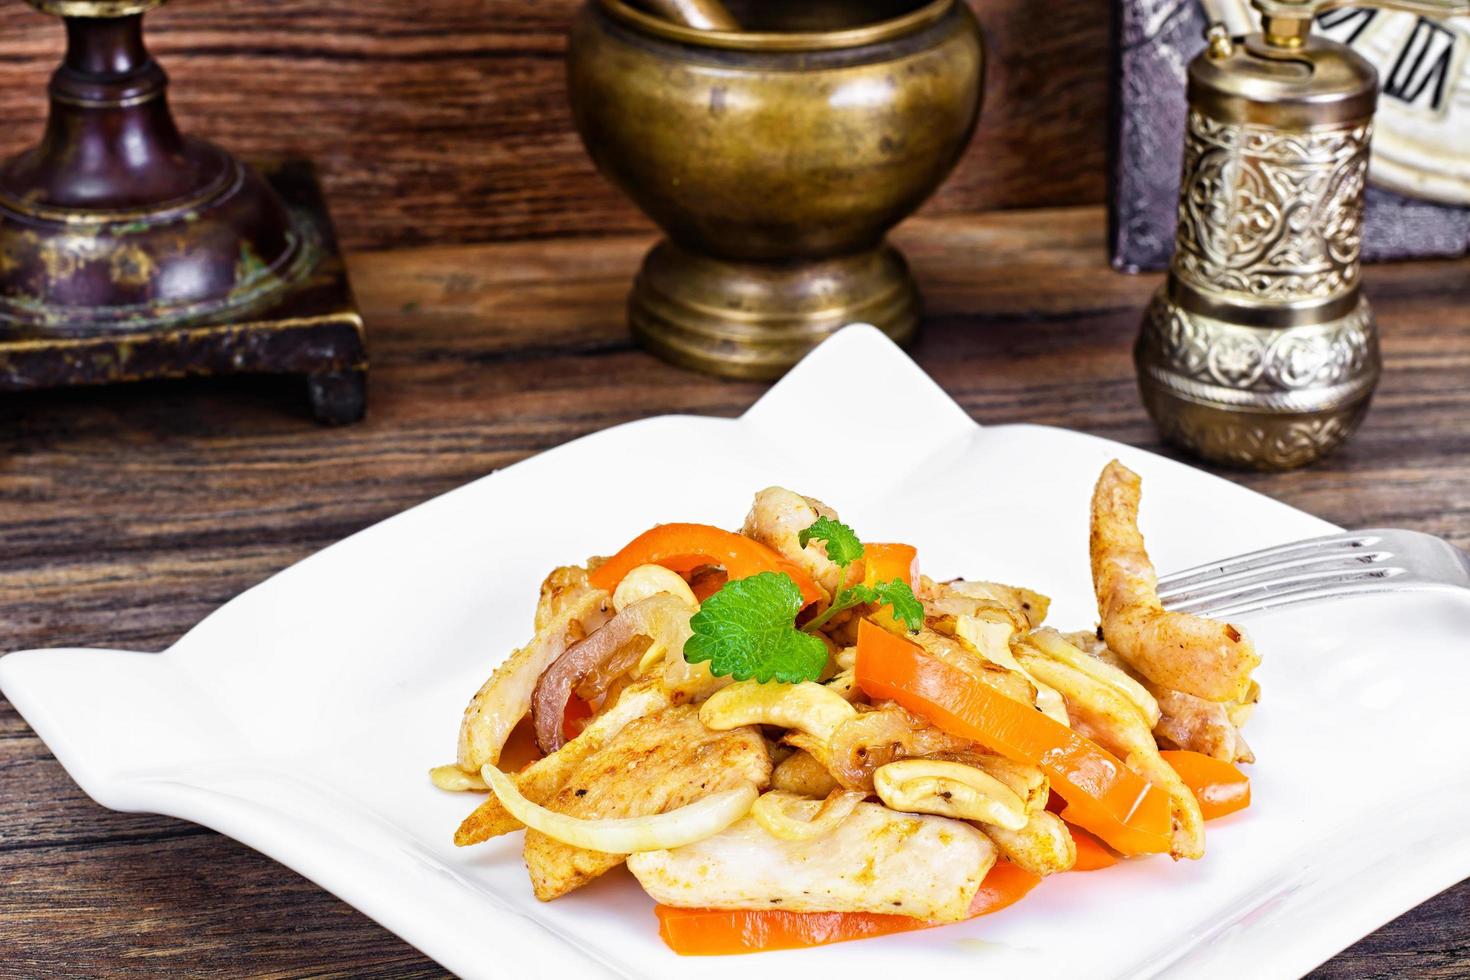 poulet aux noix de cajou et paprika doux grillé. asiatique, thaï photo